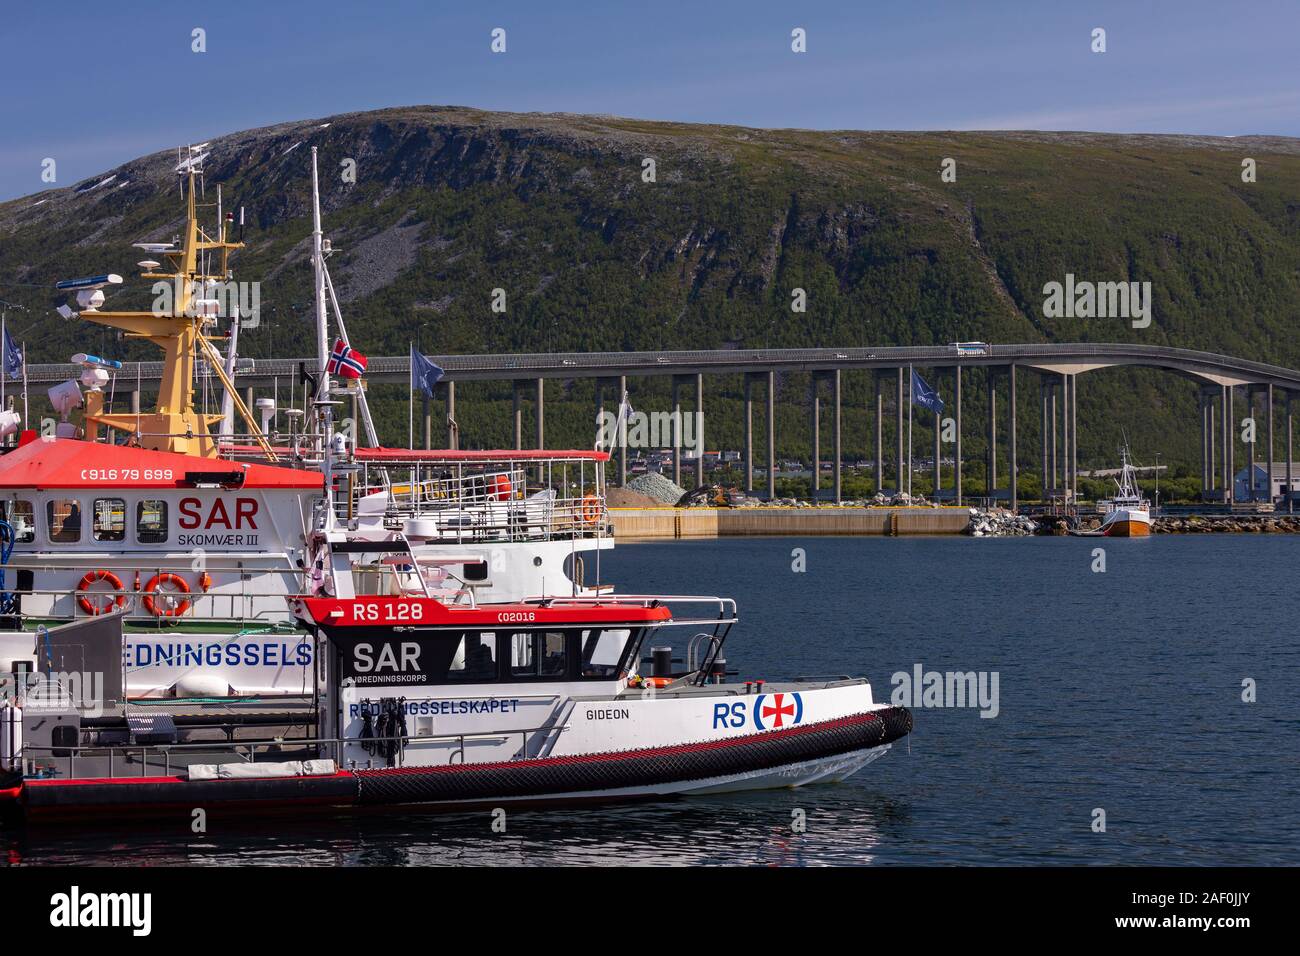 TROMSØ, NORVÈGE - bateau de sauvetage amarré au port, exploité par Redningsselskapet, la société norvégienne pour le sauvetage en mer. Dans la distance. Pont de Tromsø traverse ov Banque D'Images